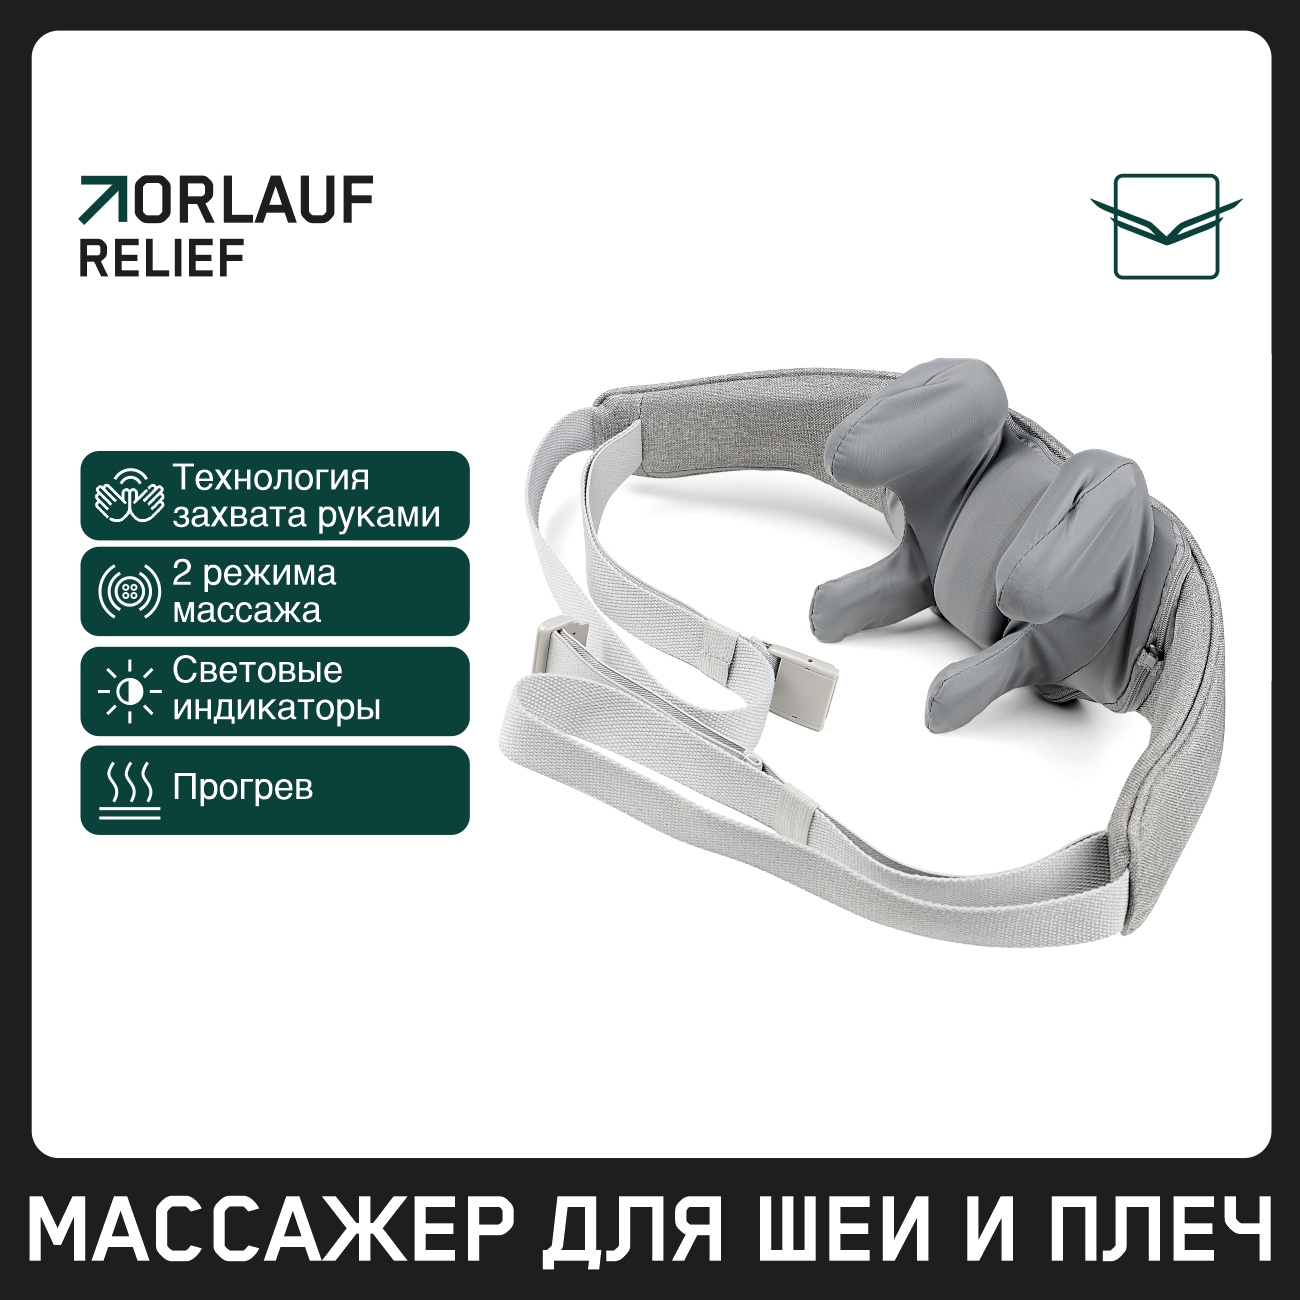 Orlauf Relief из каталога устройств для массажа в Москве по цене 9900 ₽